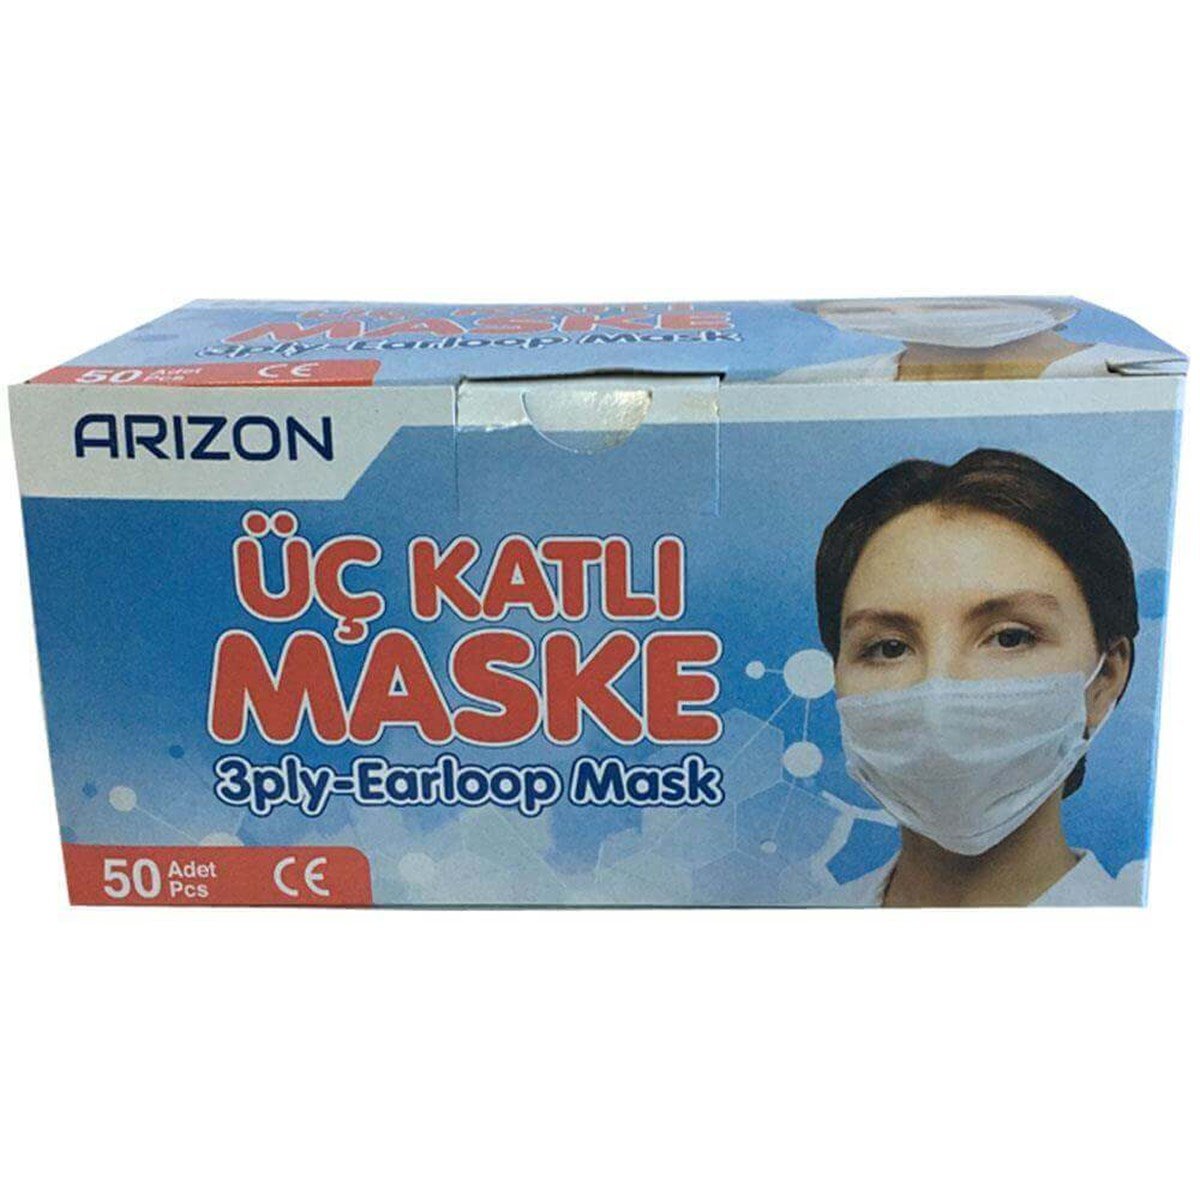 Arizon Üç Katlı Maske 50 Adet Cerrahi Maske Fiyatları | Dermosiparis.com